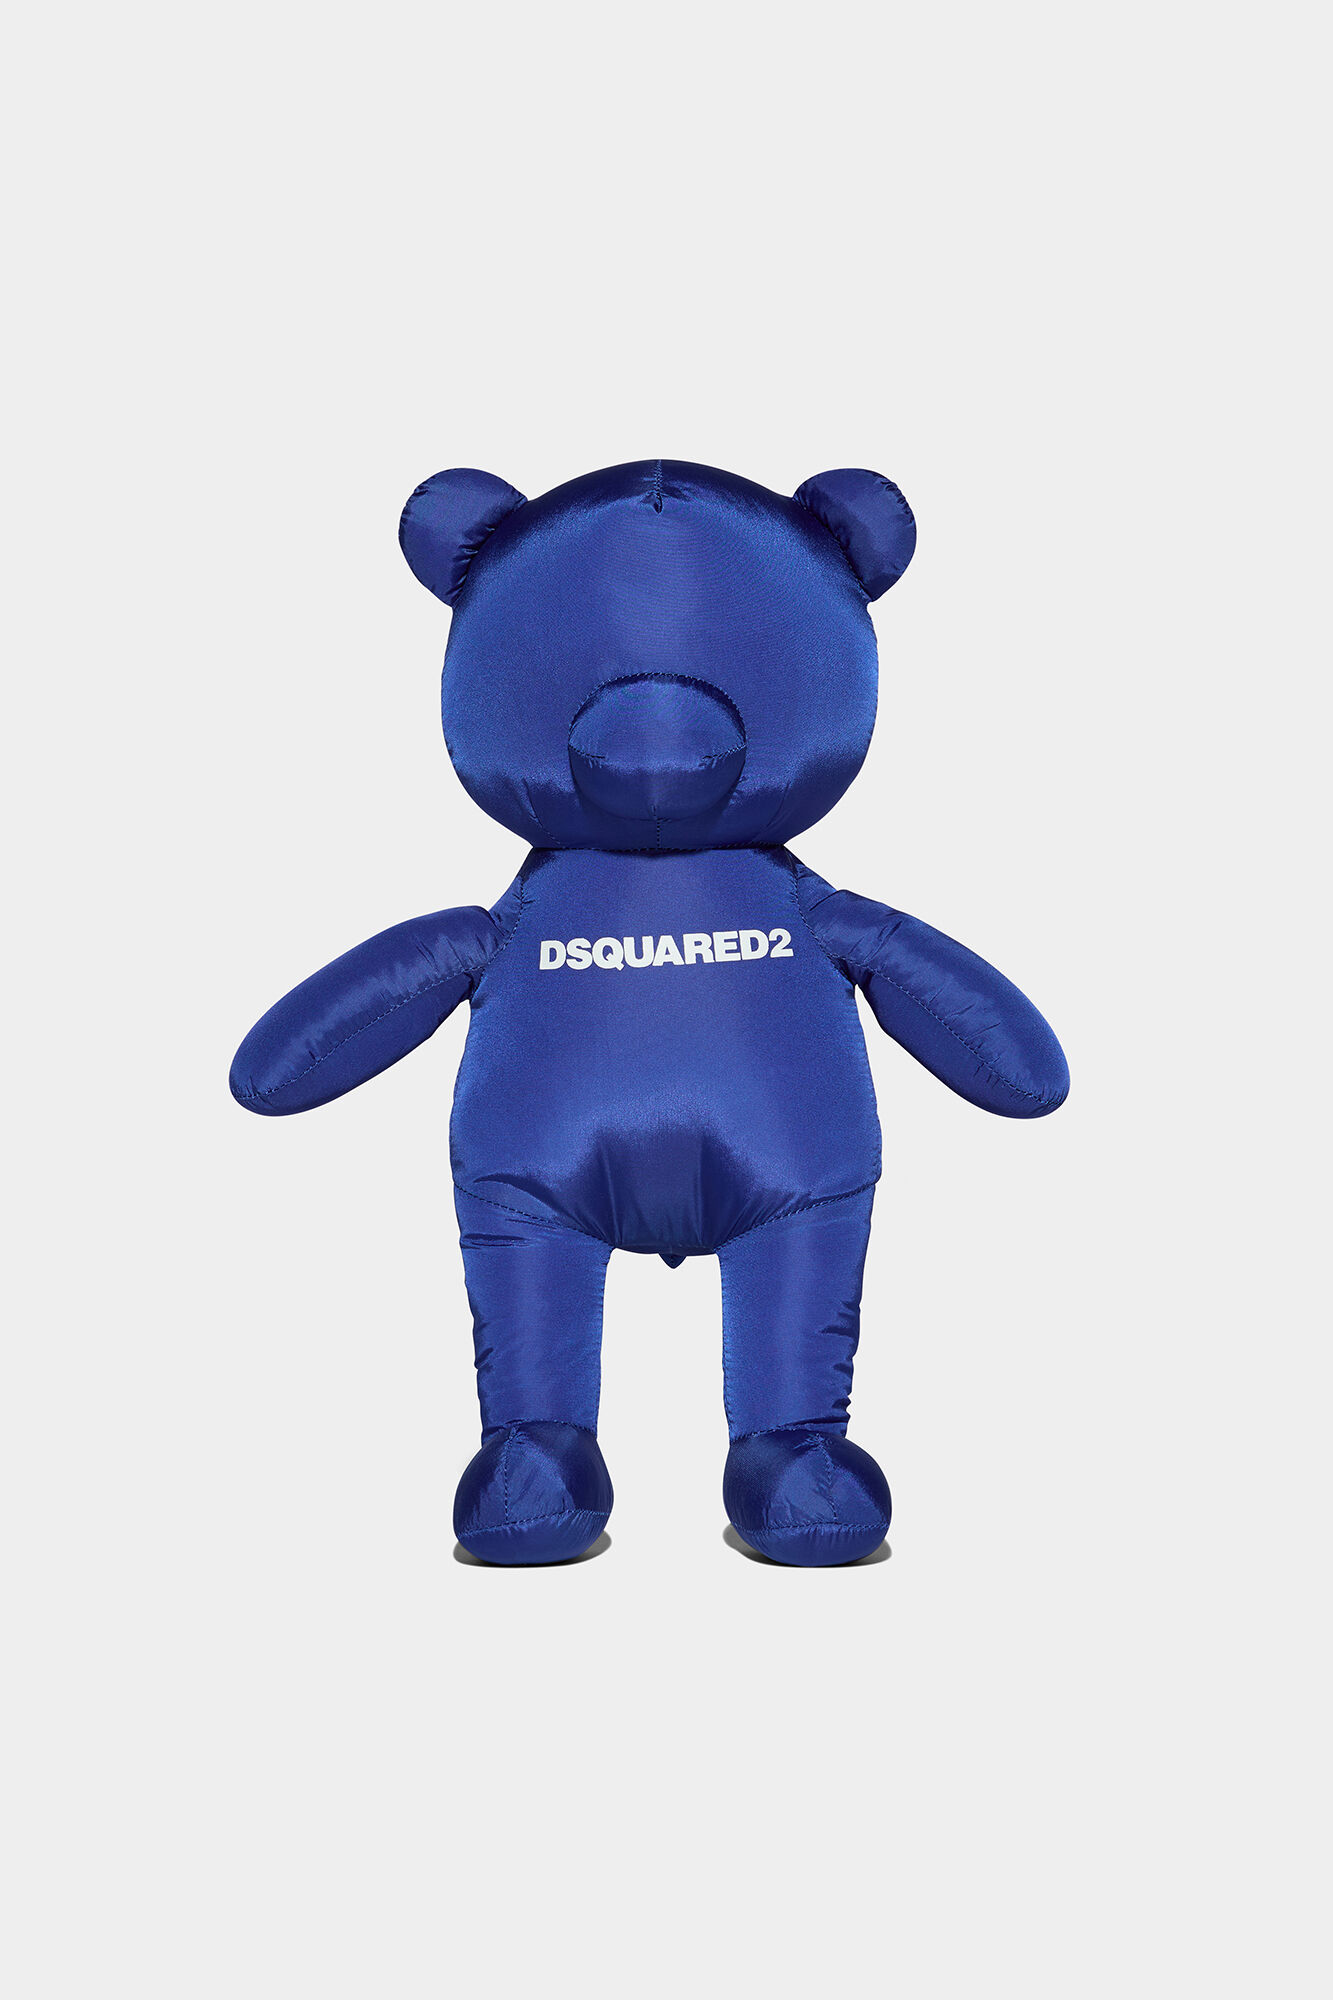 メンズ【dsquared2】Travel Lite Teddy Bear Toy